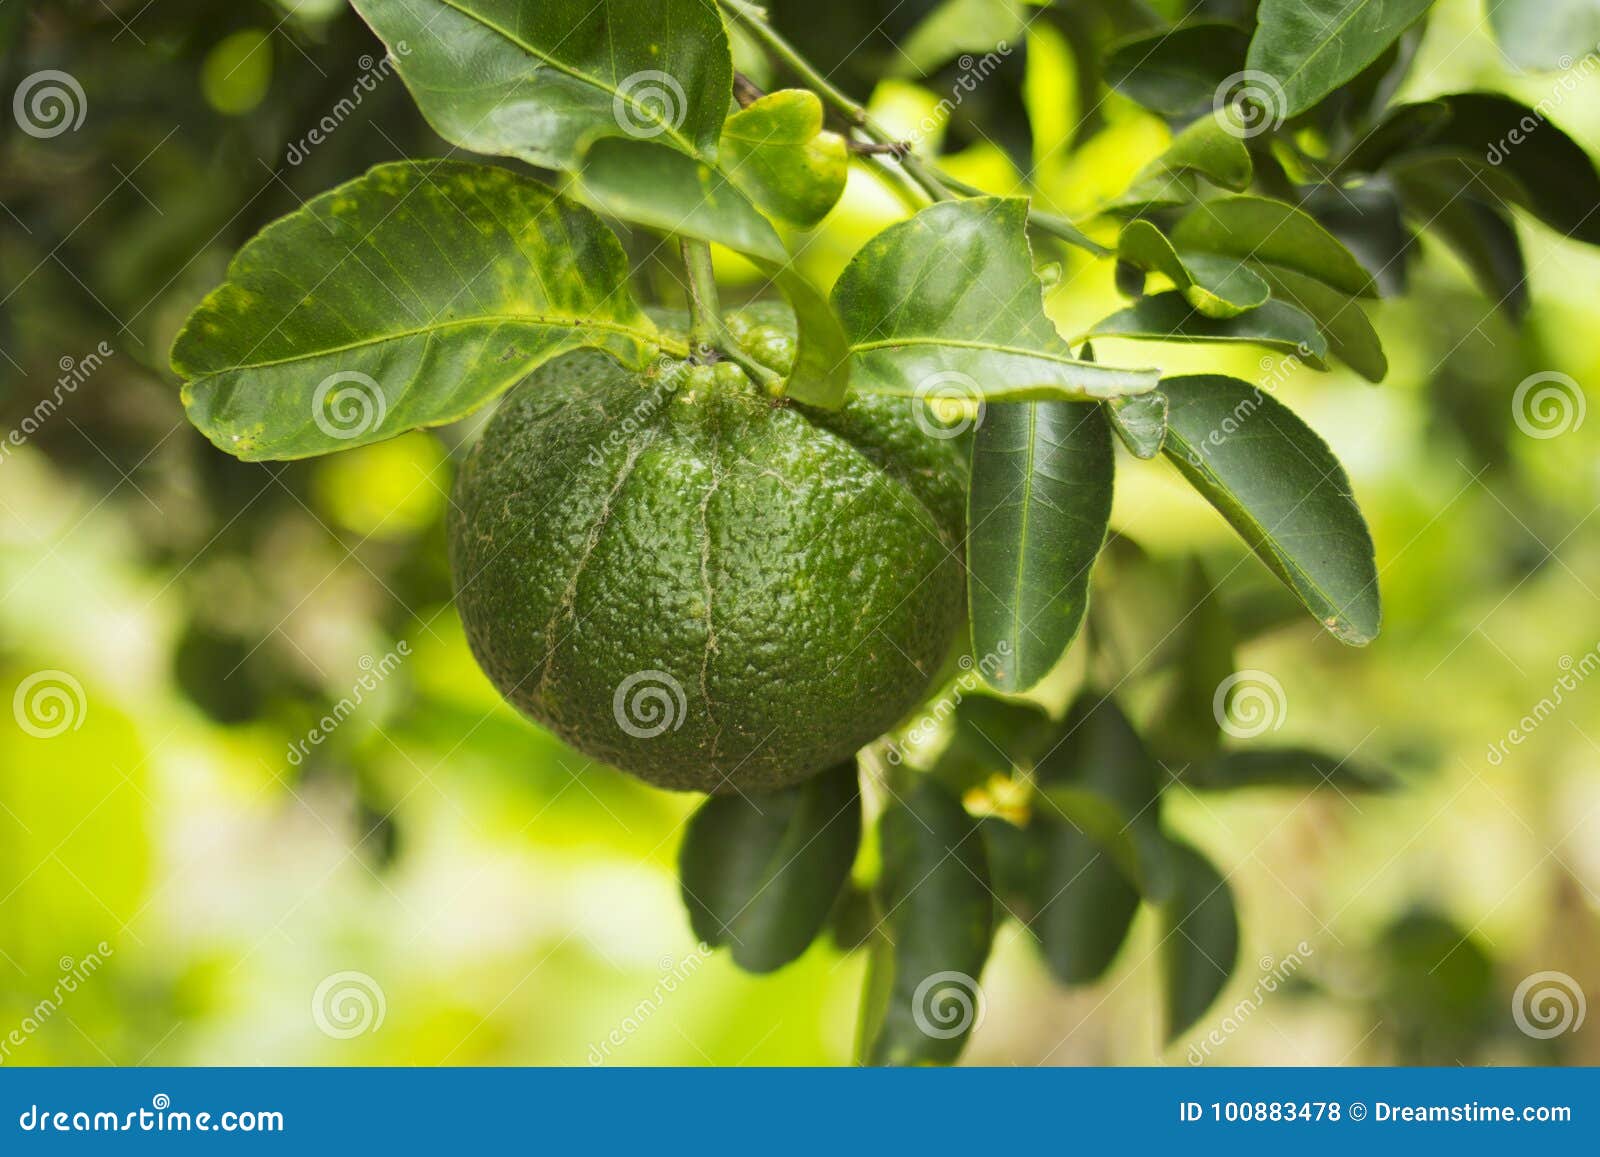 Грин мандарин. Зеленые мандарины на дереве. Мандарины незрелый на деревьях. Зелёный мандарин на ветке. Как растет мандарин зеленый.